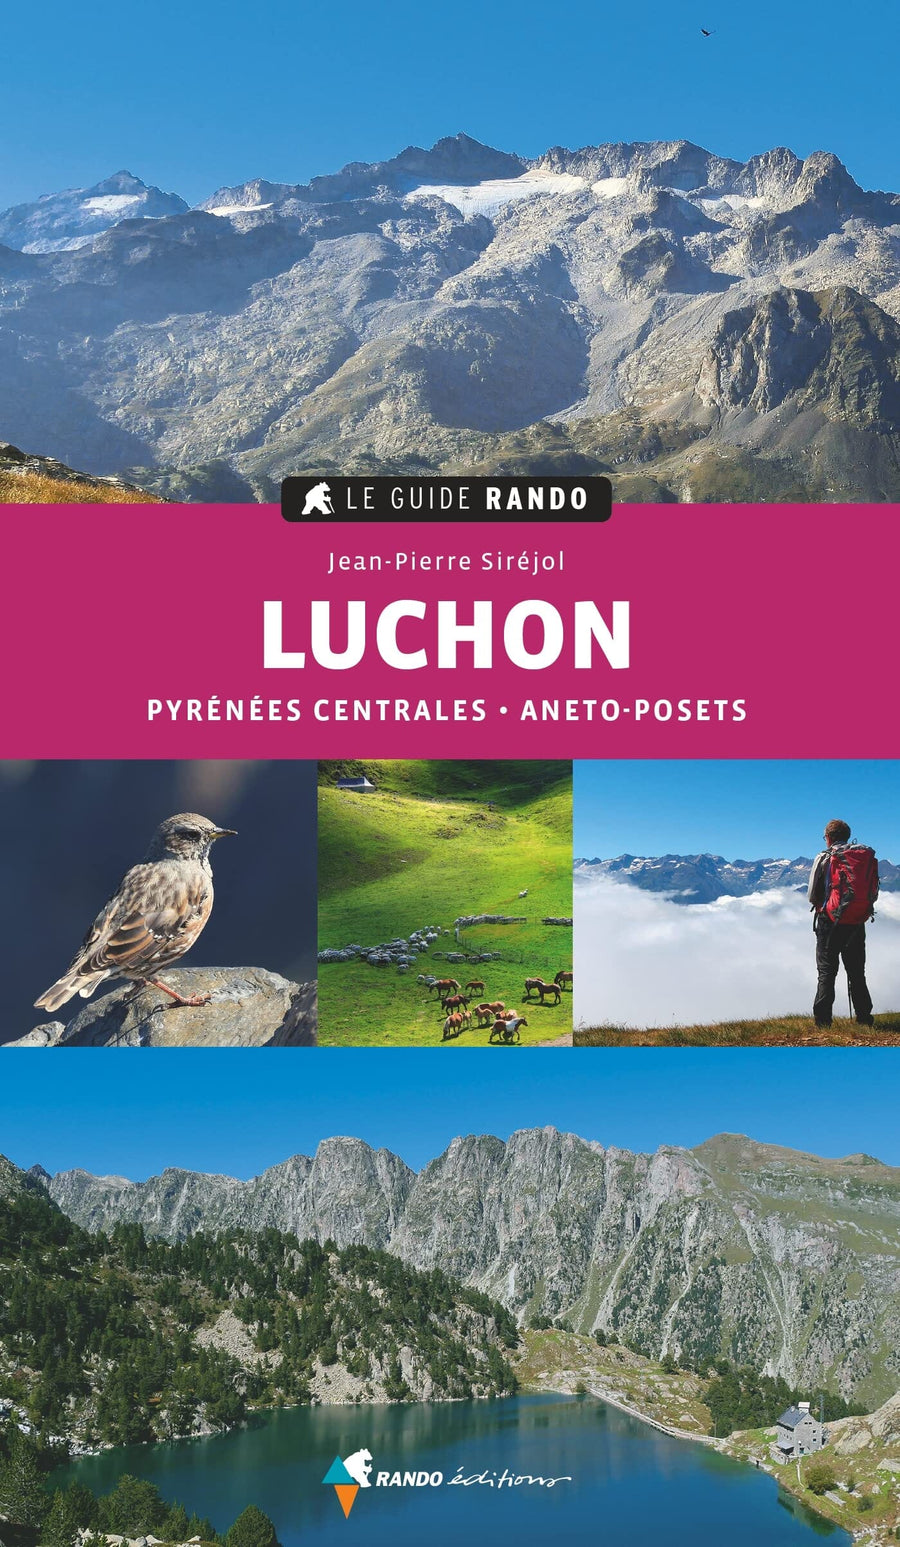 Le Guide Rando - Luchon | Rando Editions guide de randonnée Rando Editions 